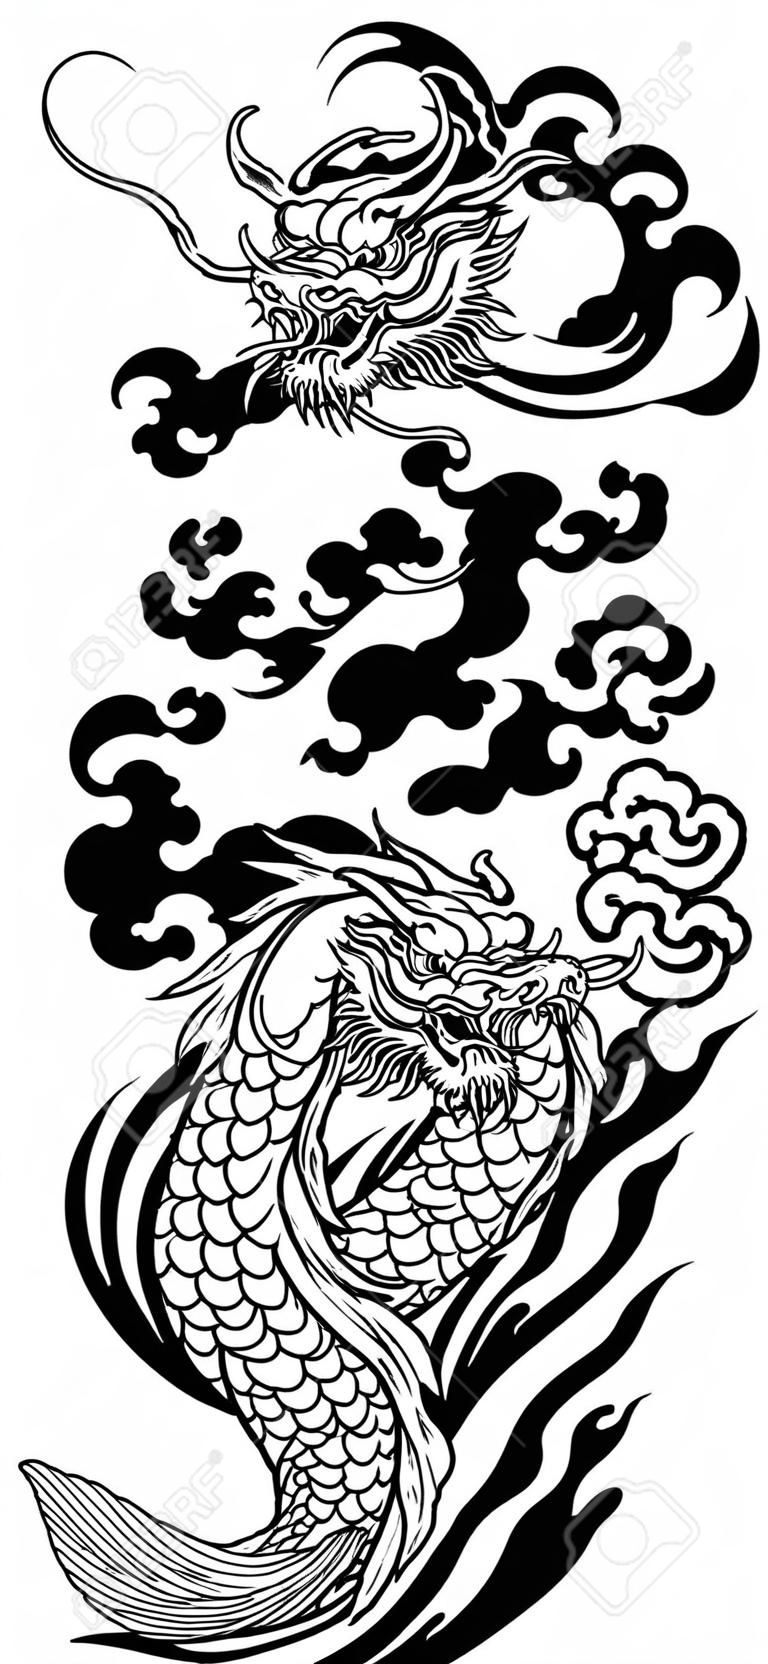 Dragão chinês ou do leste asiático com ondas de água e peixes japoneses da carpa de koi que nadam acima. Tatuagem. Ilustração vetorial